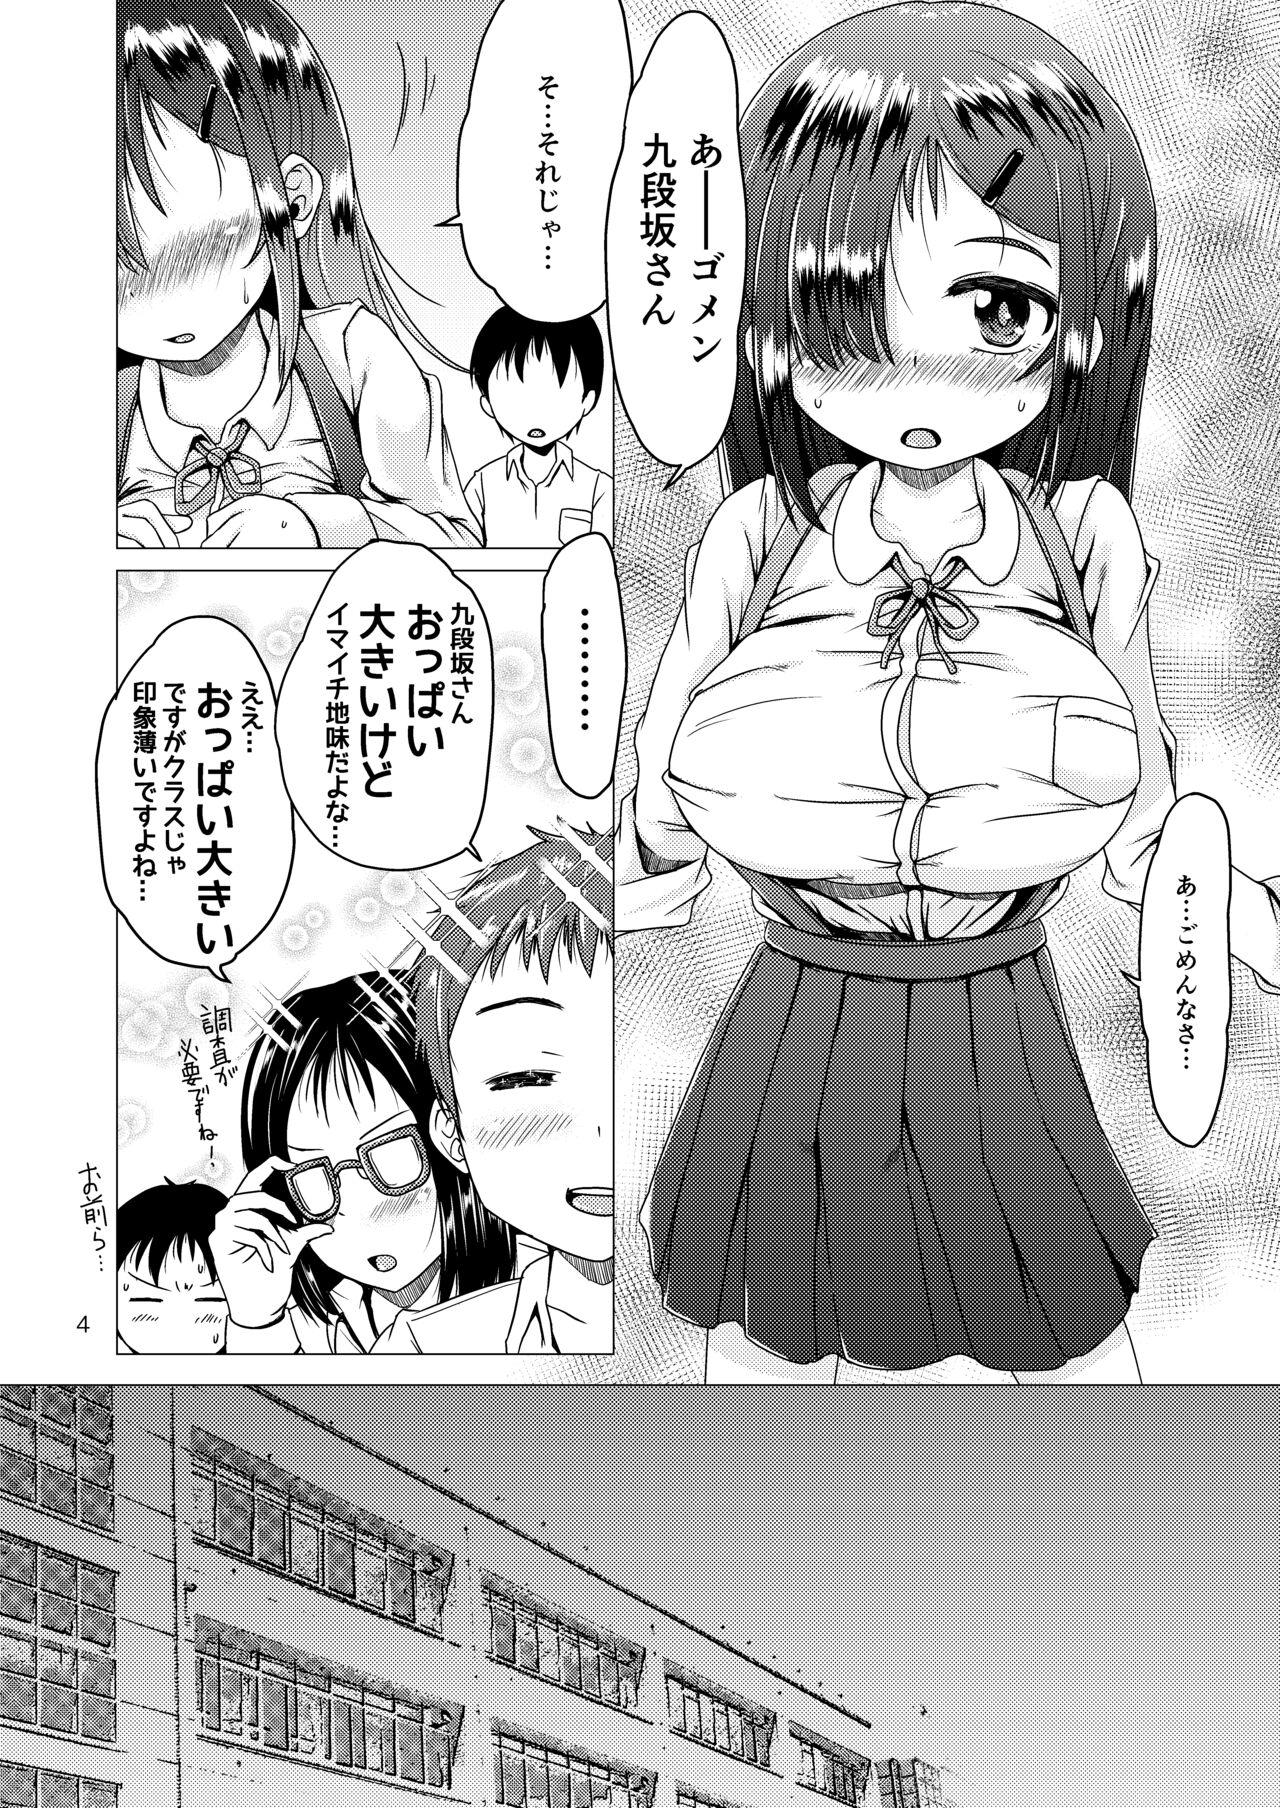 Naughty トイレの花子さんが地味で巨乳なクラスメイトだった話。 - Original Couple - Page 4